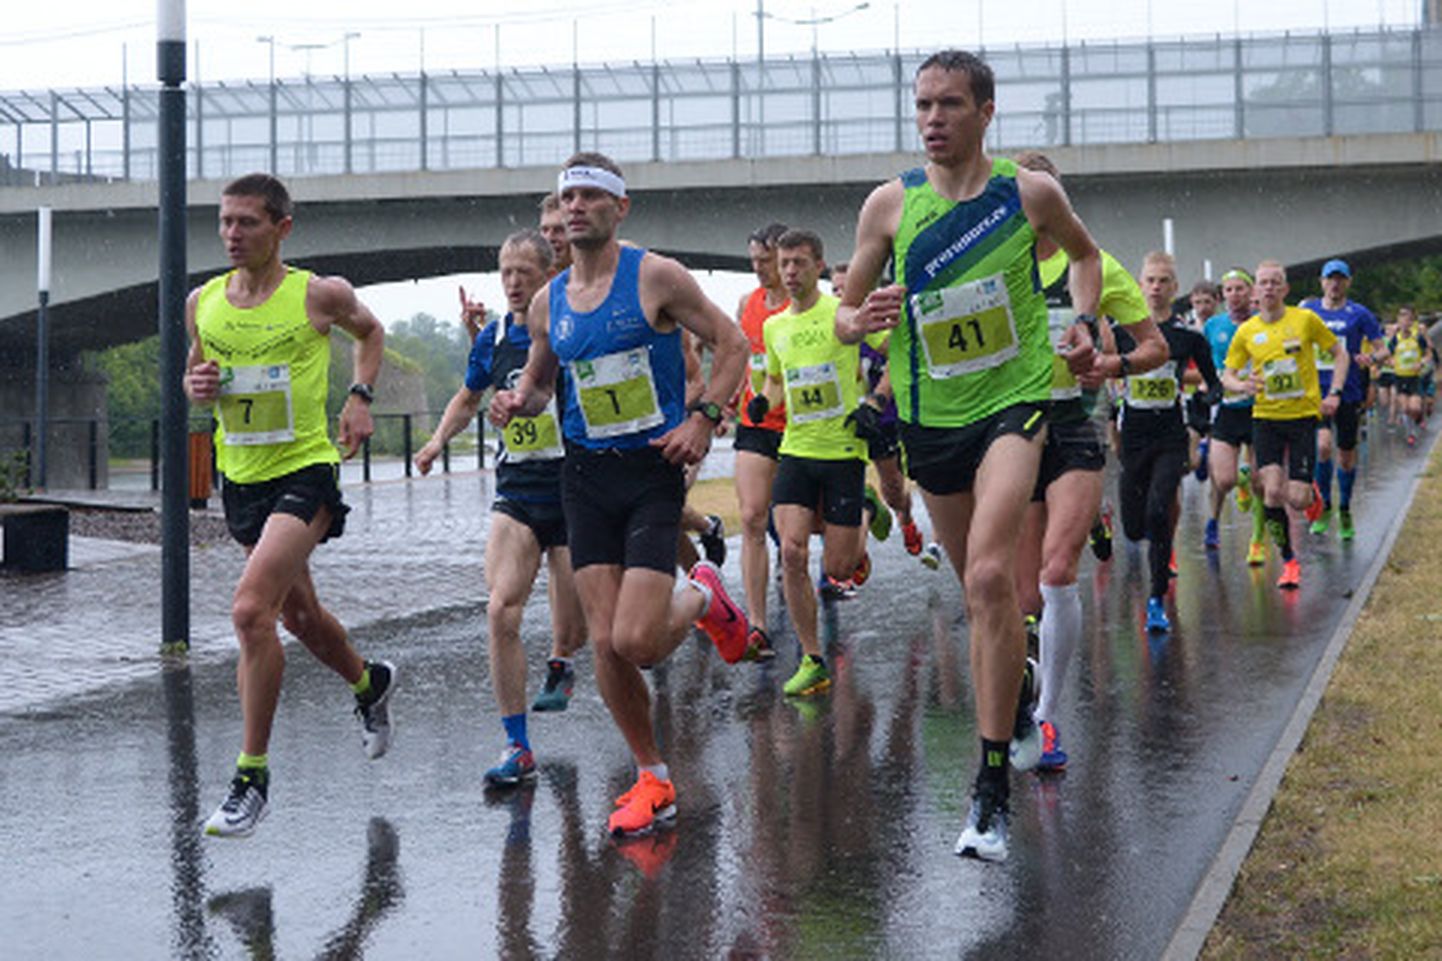 Tugevat vihma kallas kogu võistluse ajal. Poolmaratoni võitja Tiidrek Nurme (nr 1) kadus konkrentidelt eest õige pea pärast stardipauku.